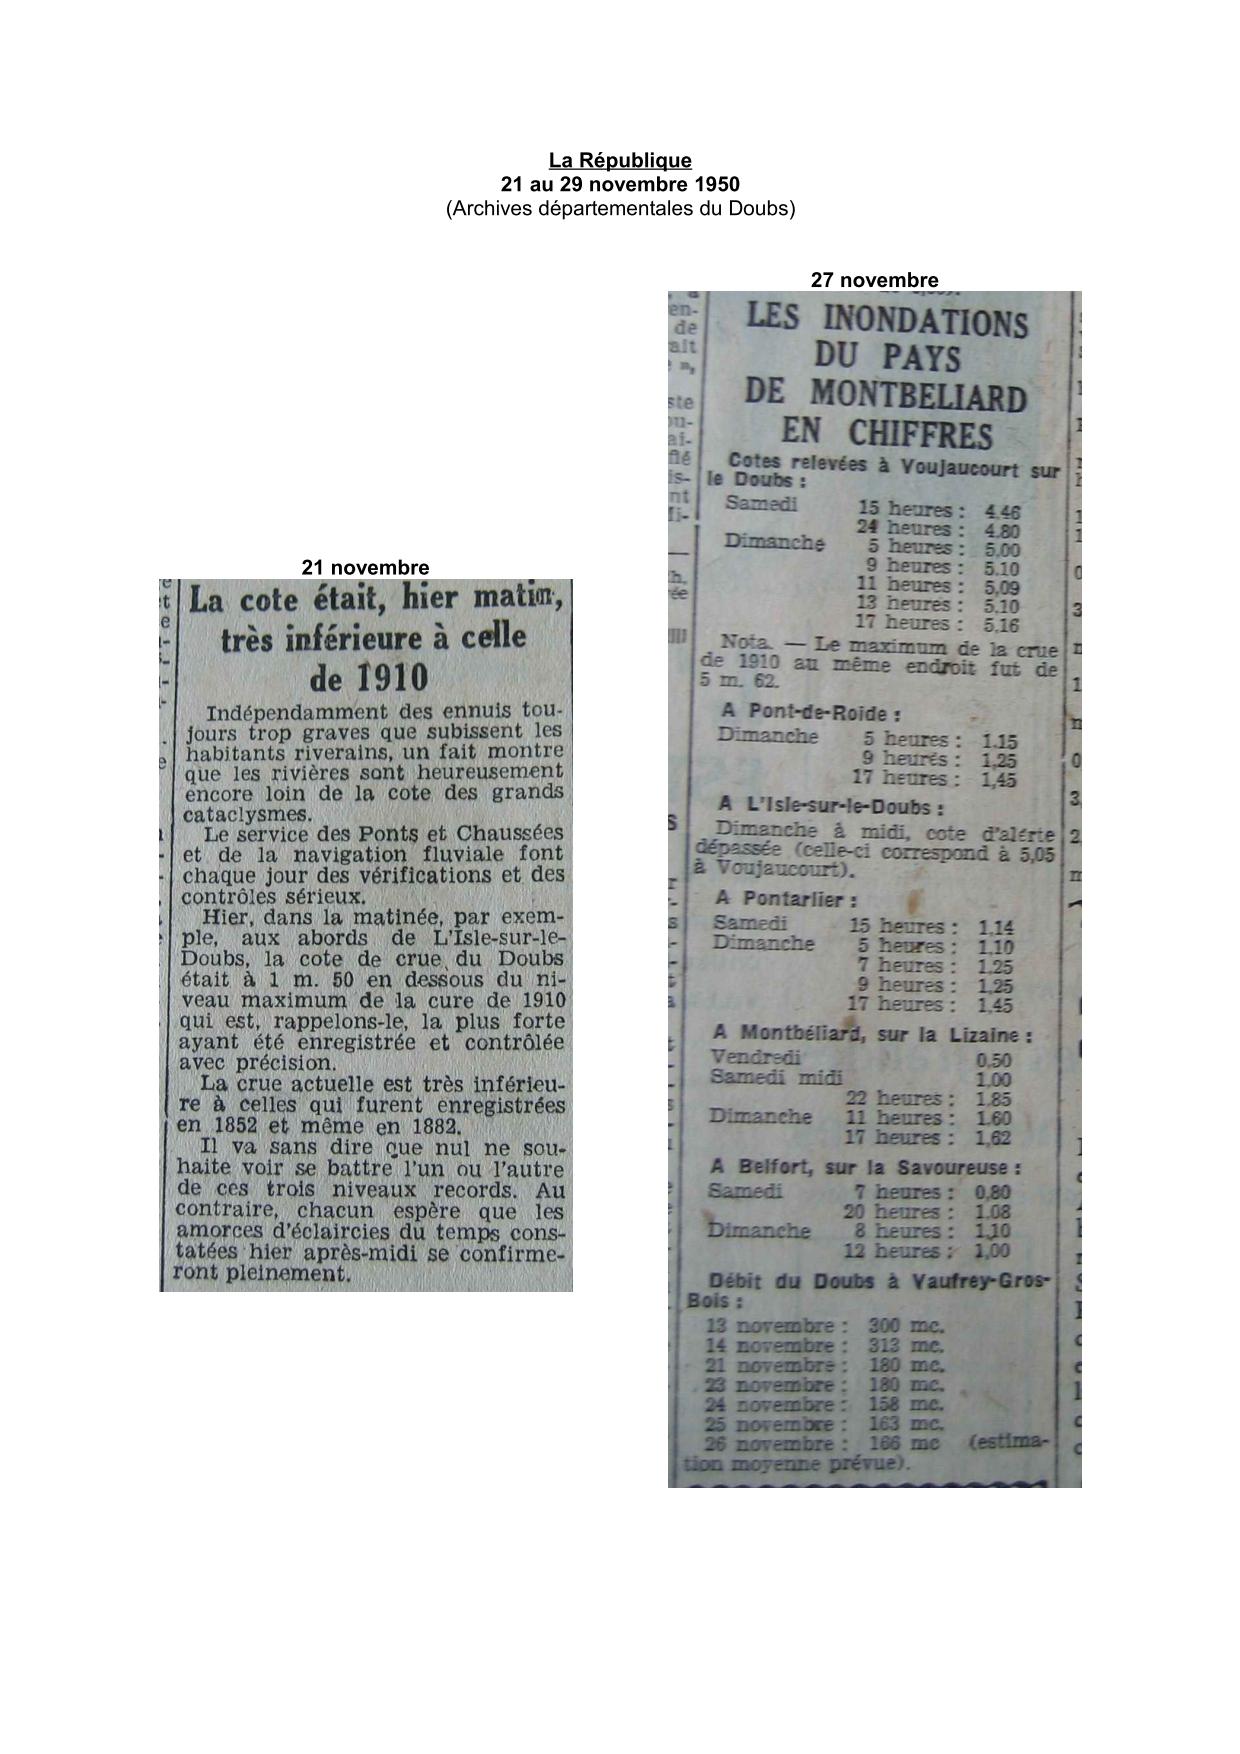 Journal - La République - 1950 - Cotes relevées dans Le Doubs